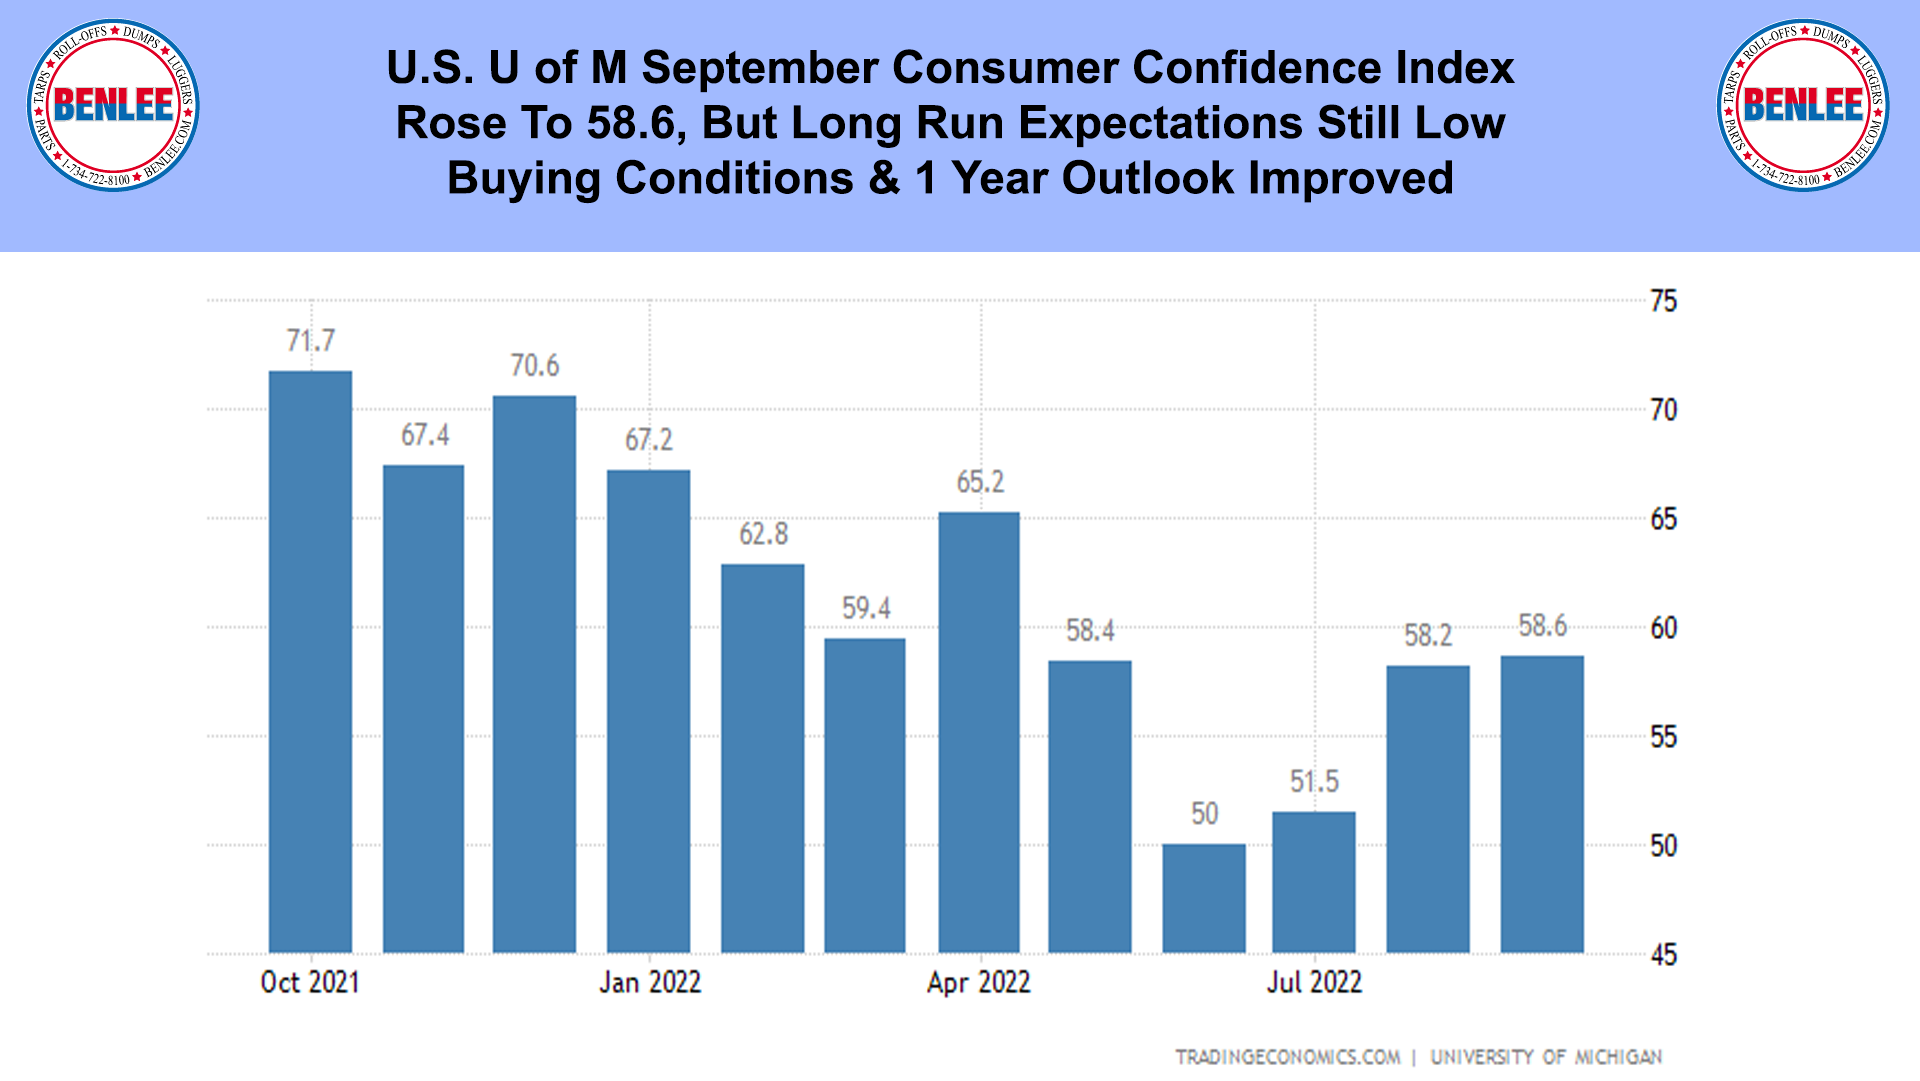 U.S. U of M September Consumer Confidence Index